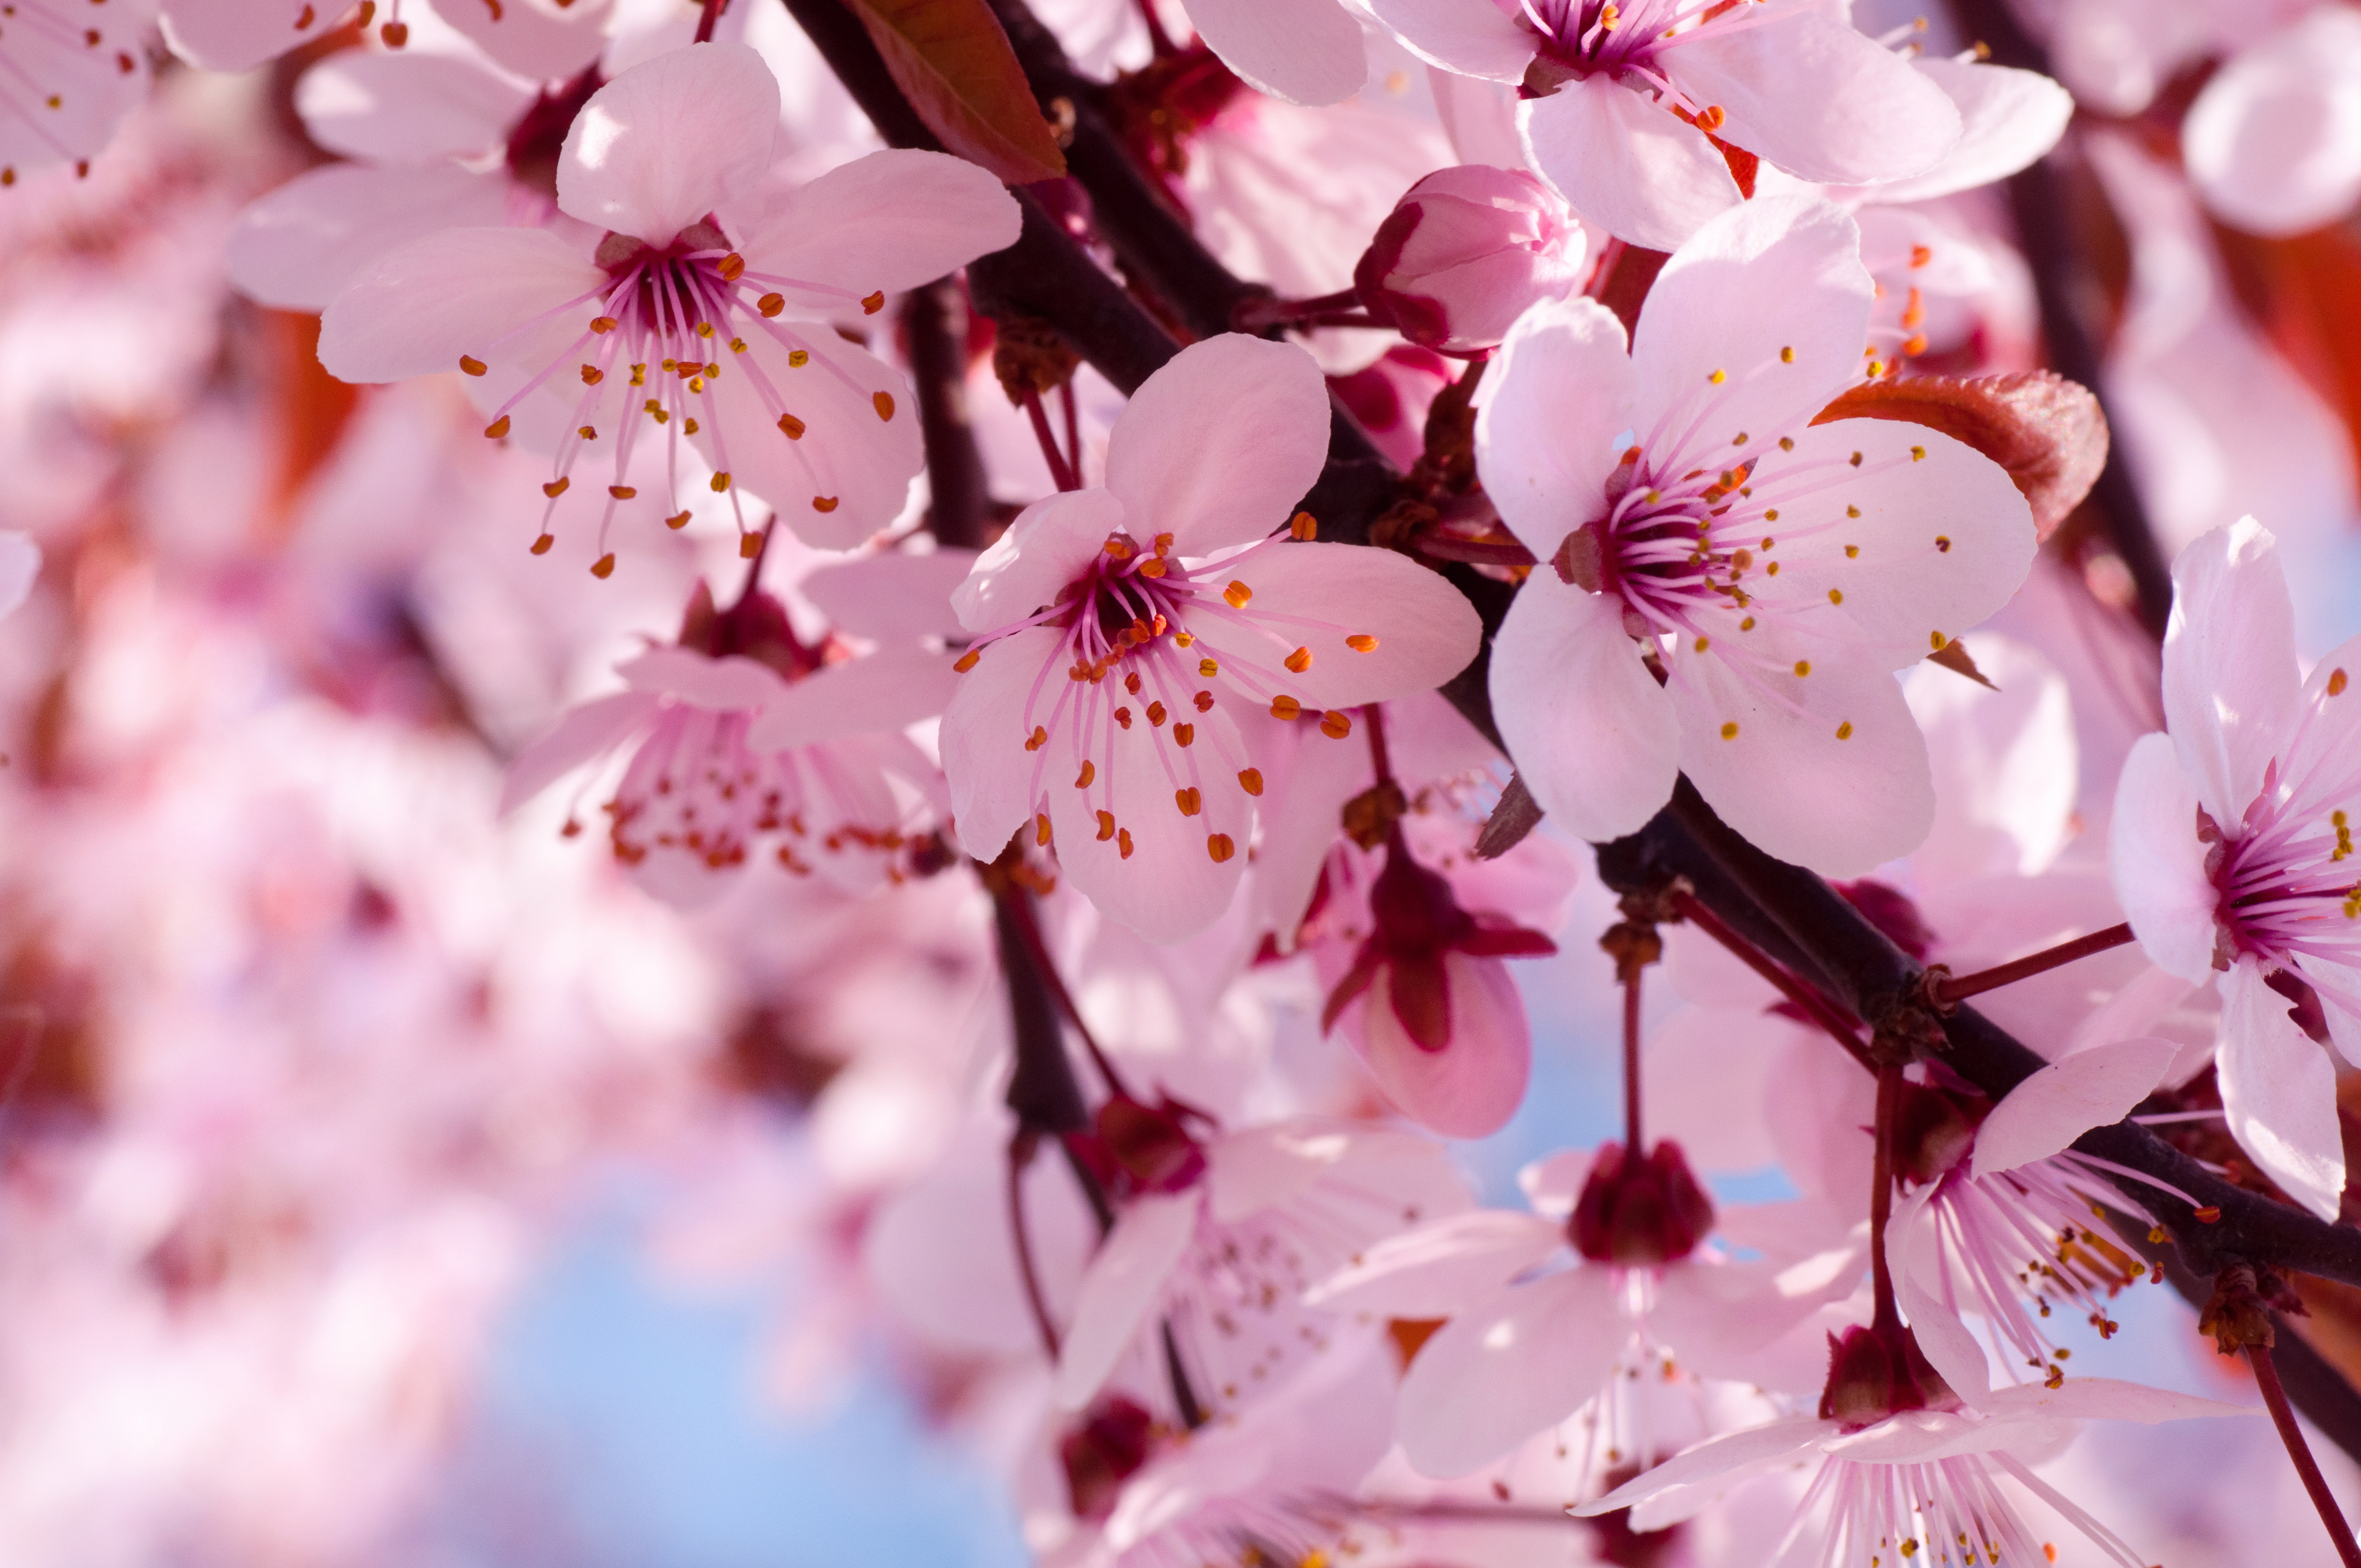 Hình Hoa Đào Tết 4K: Hoa đào là biểu tượng kinh điển của Tết Nguyên Đán, và với những hình ảnh hoa đào Tết 4K từ chúng tôi, bạn sẽ được tận hưởng vẻ đẹp tuyệt vời của loài hoa này. Chất lượng hình ảnh tuyệt vời, màu sắc sống động, đảm bảo sẽ làm bạn thật sự hài lòng khi sử dụng.